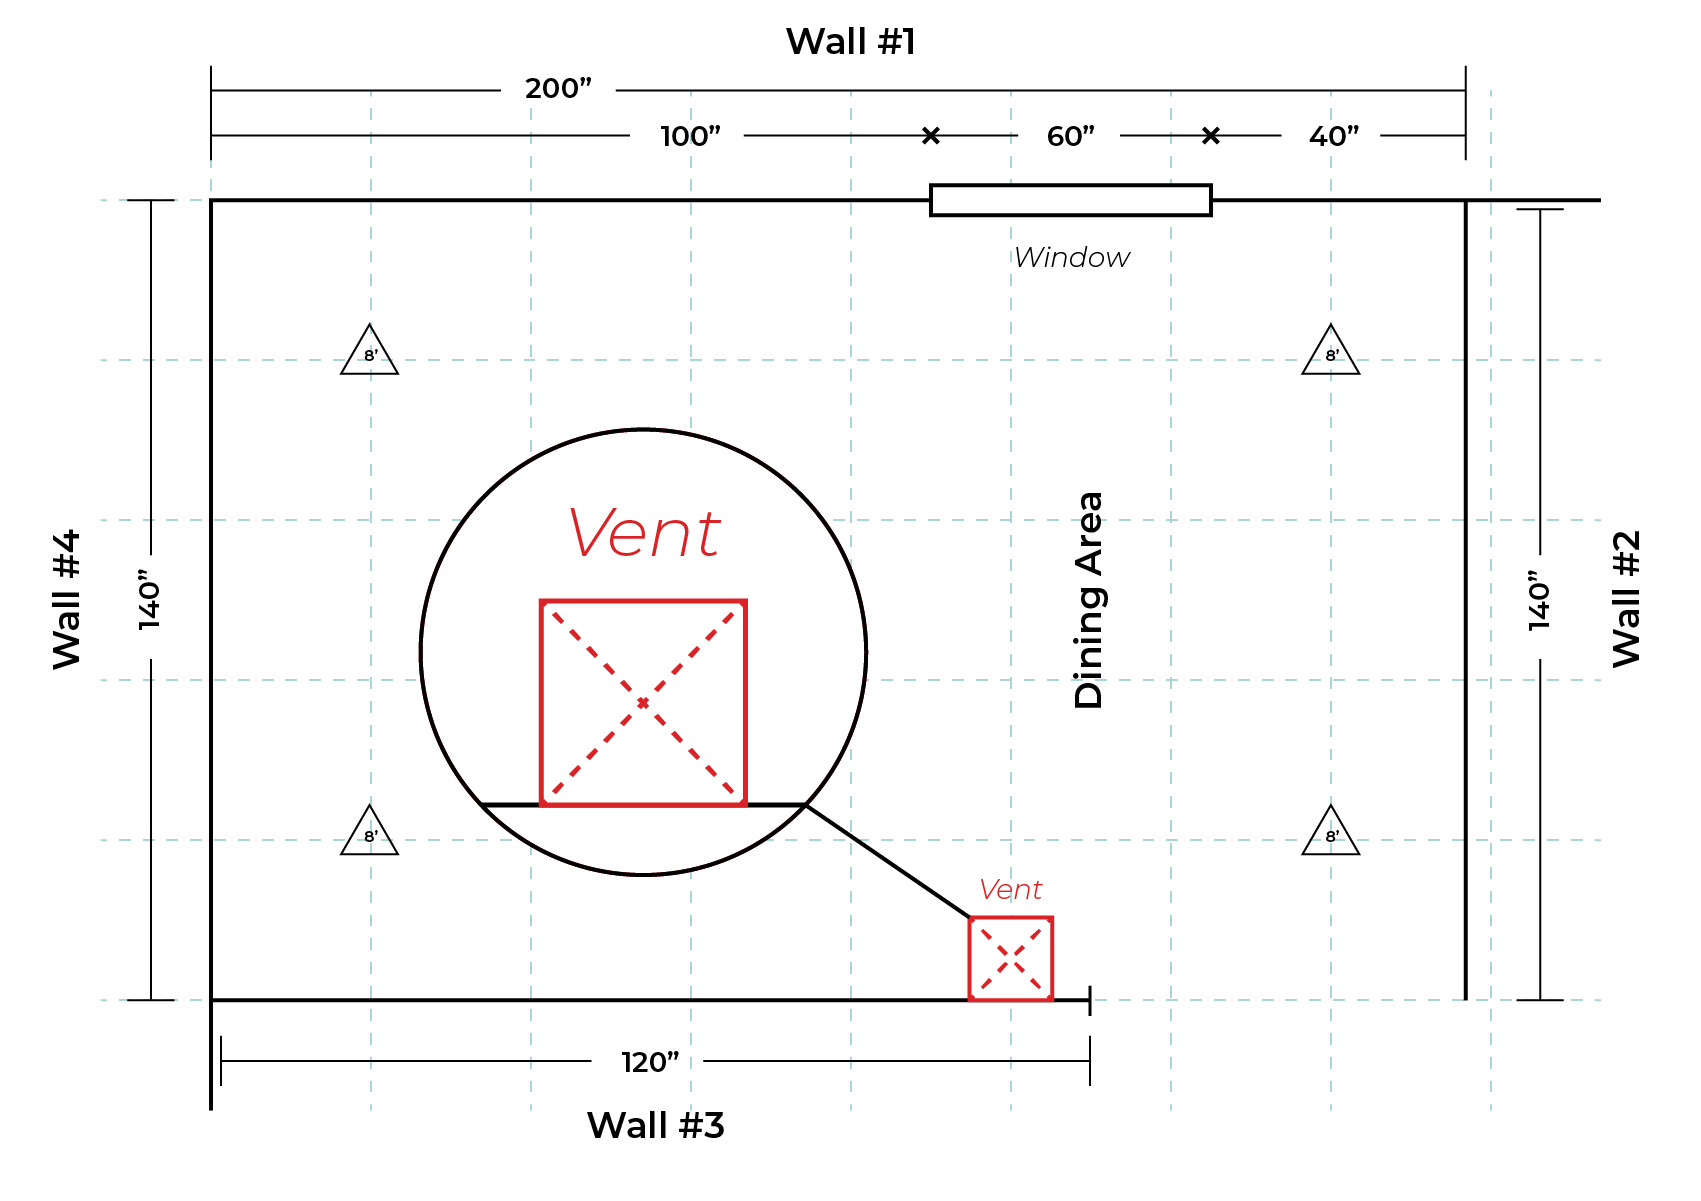 Wall measurement recording obstructions.